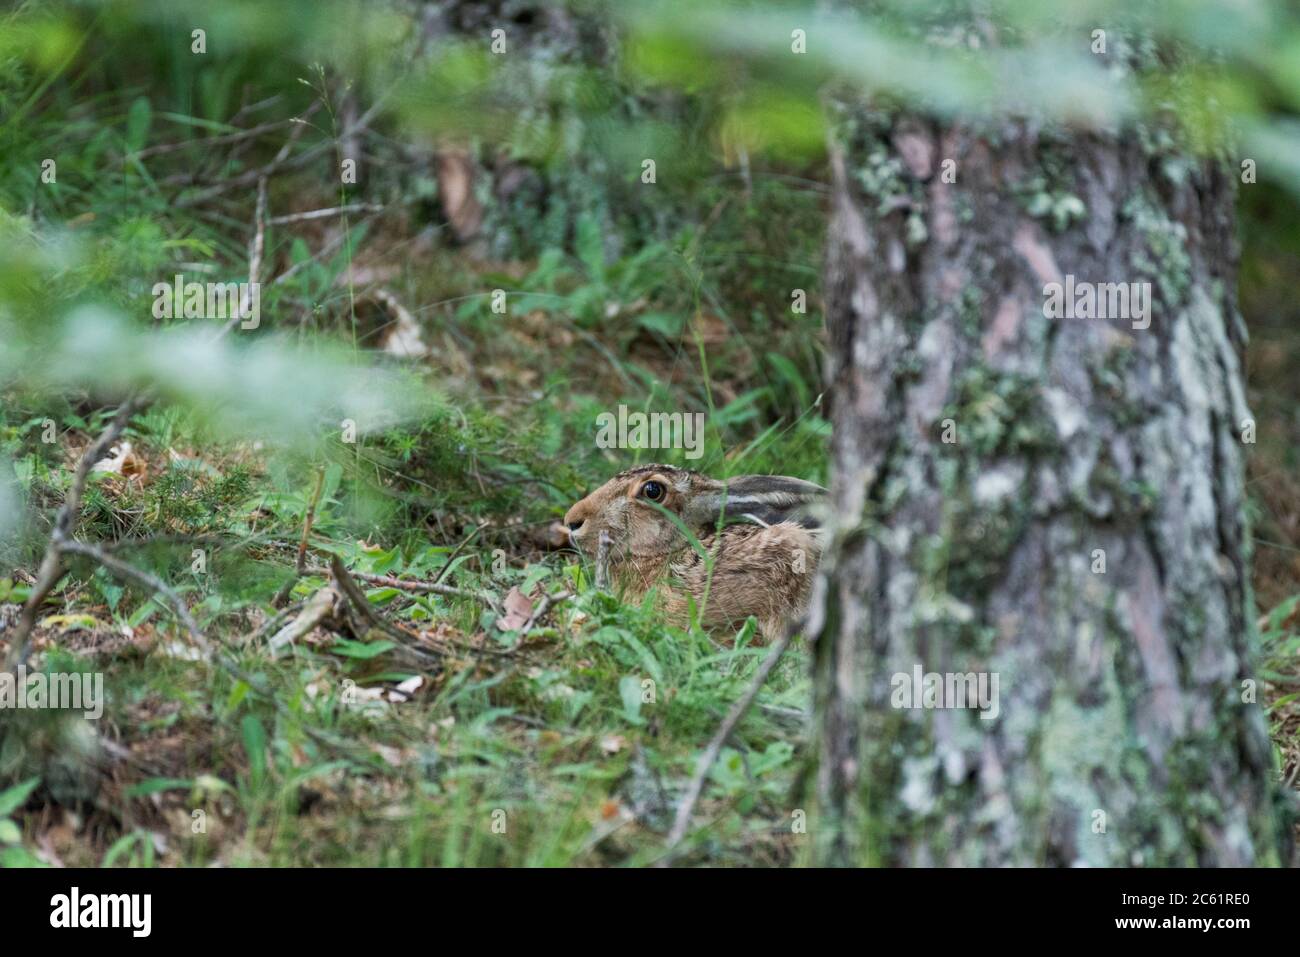 Un lièvre européen (Lepus europaeus) se cachant dans la forêt Banque D'Images